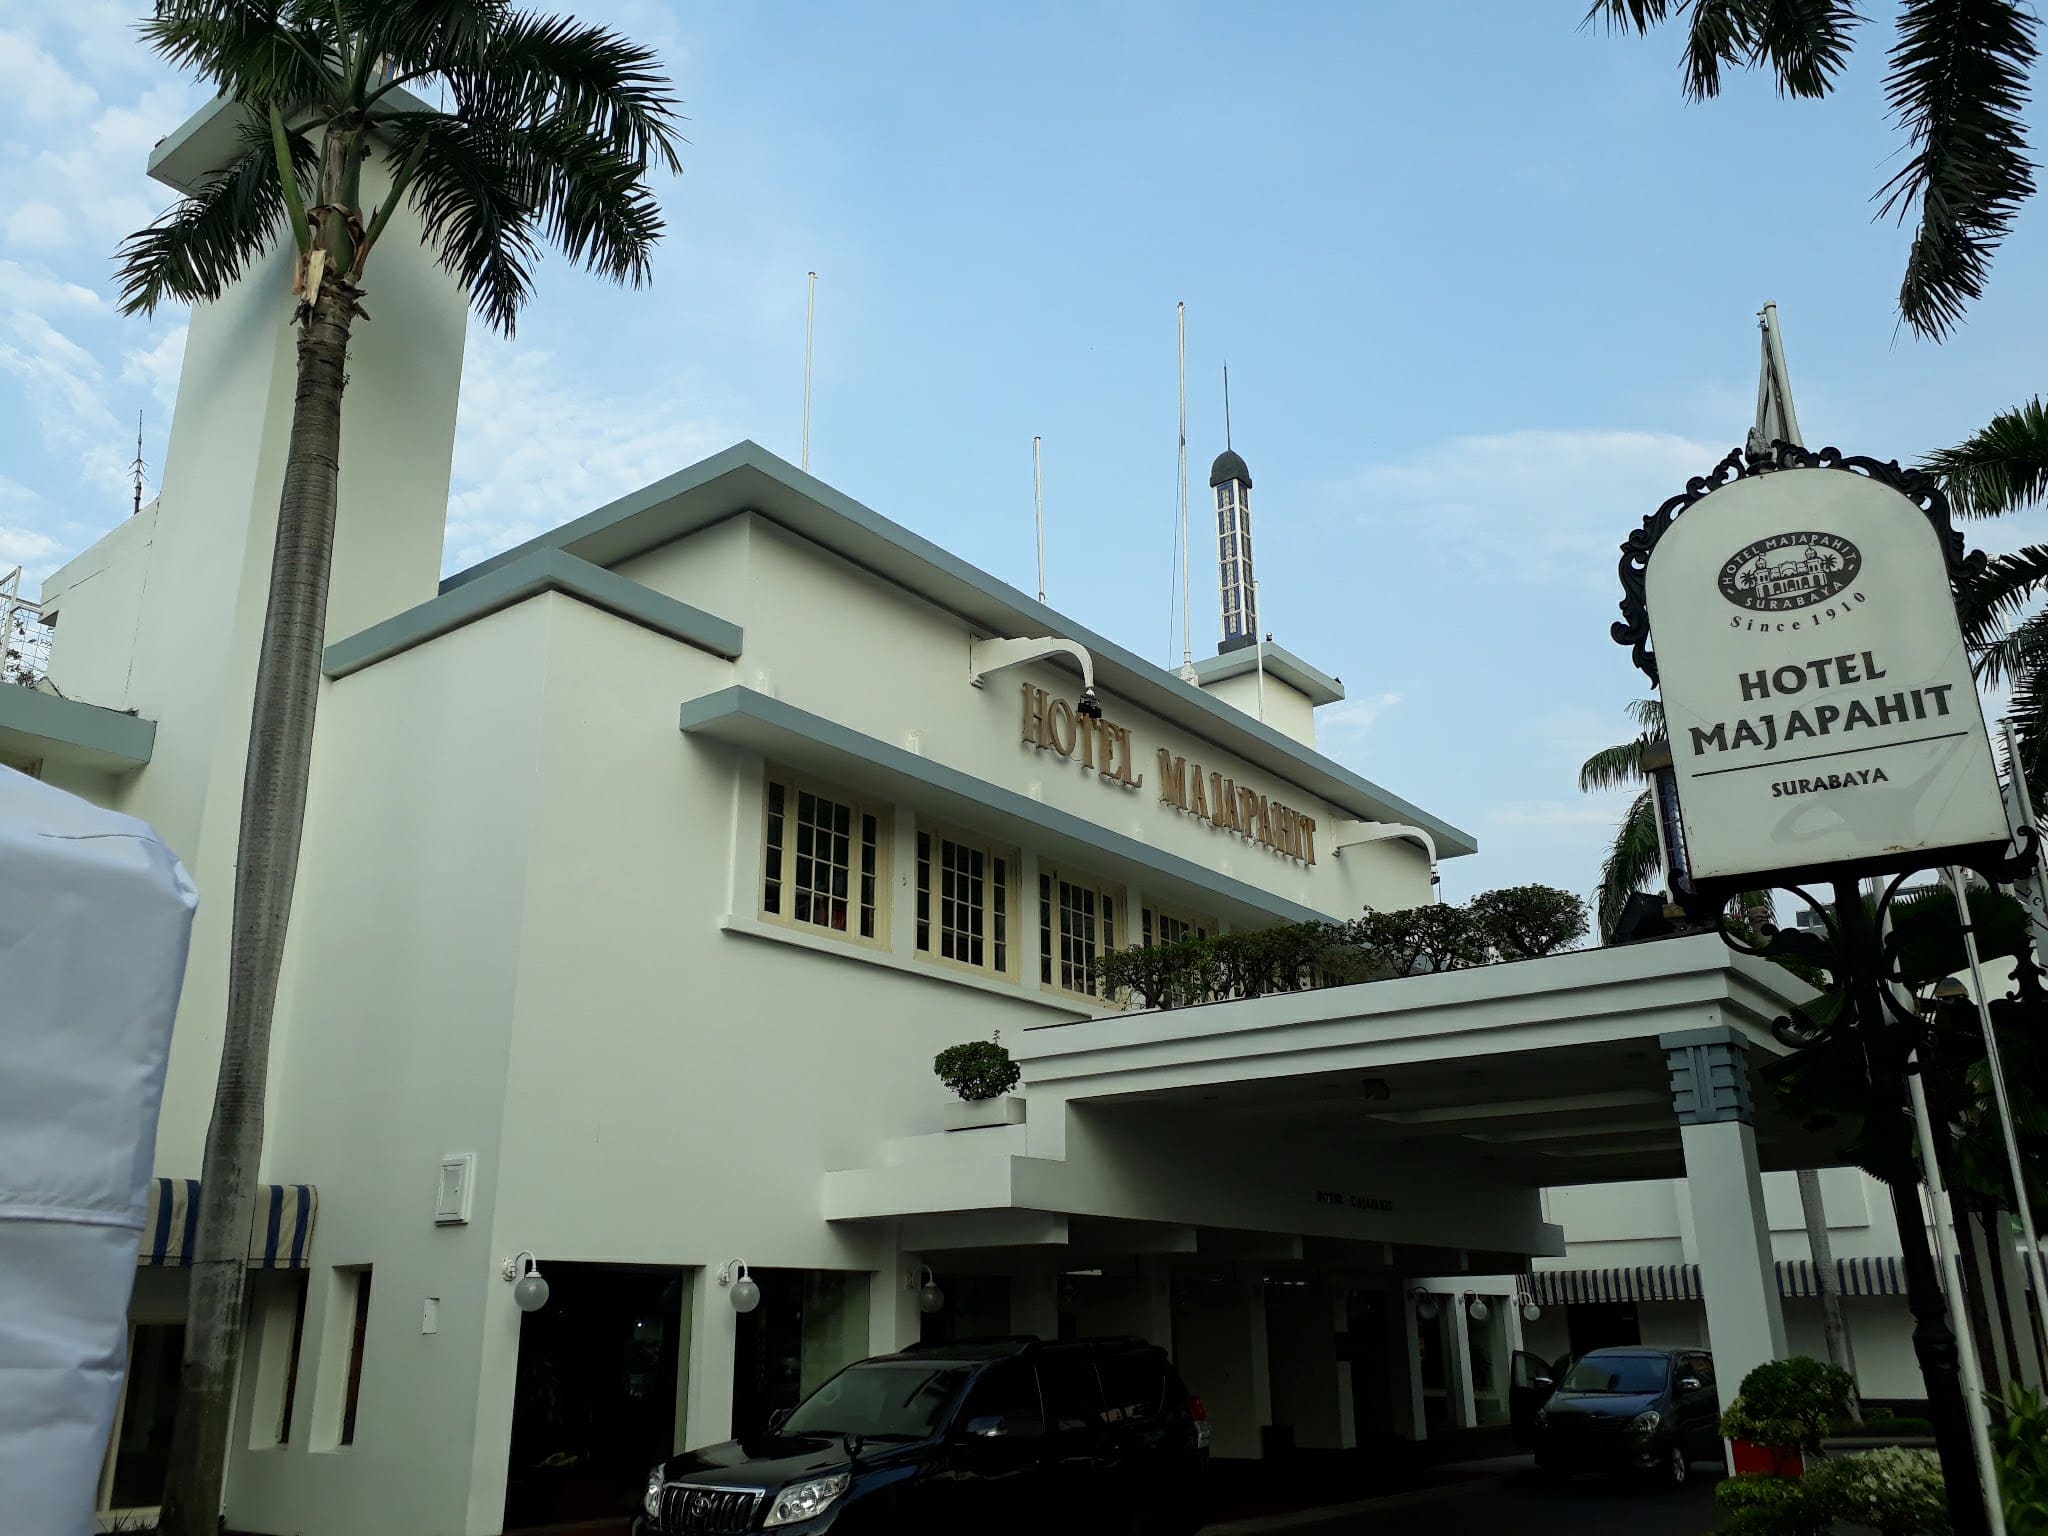 Hotel Majapahit. Image: Wikipedia